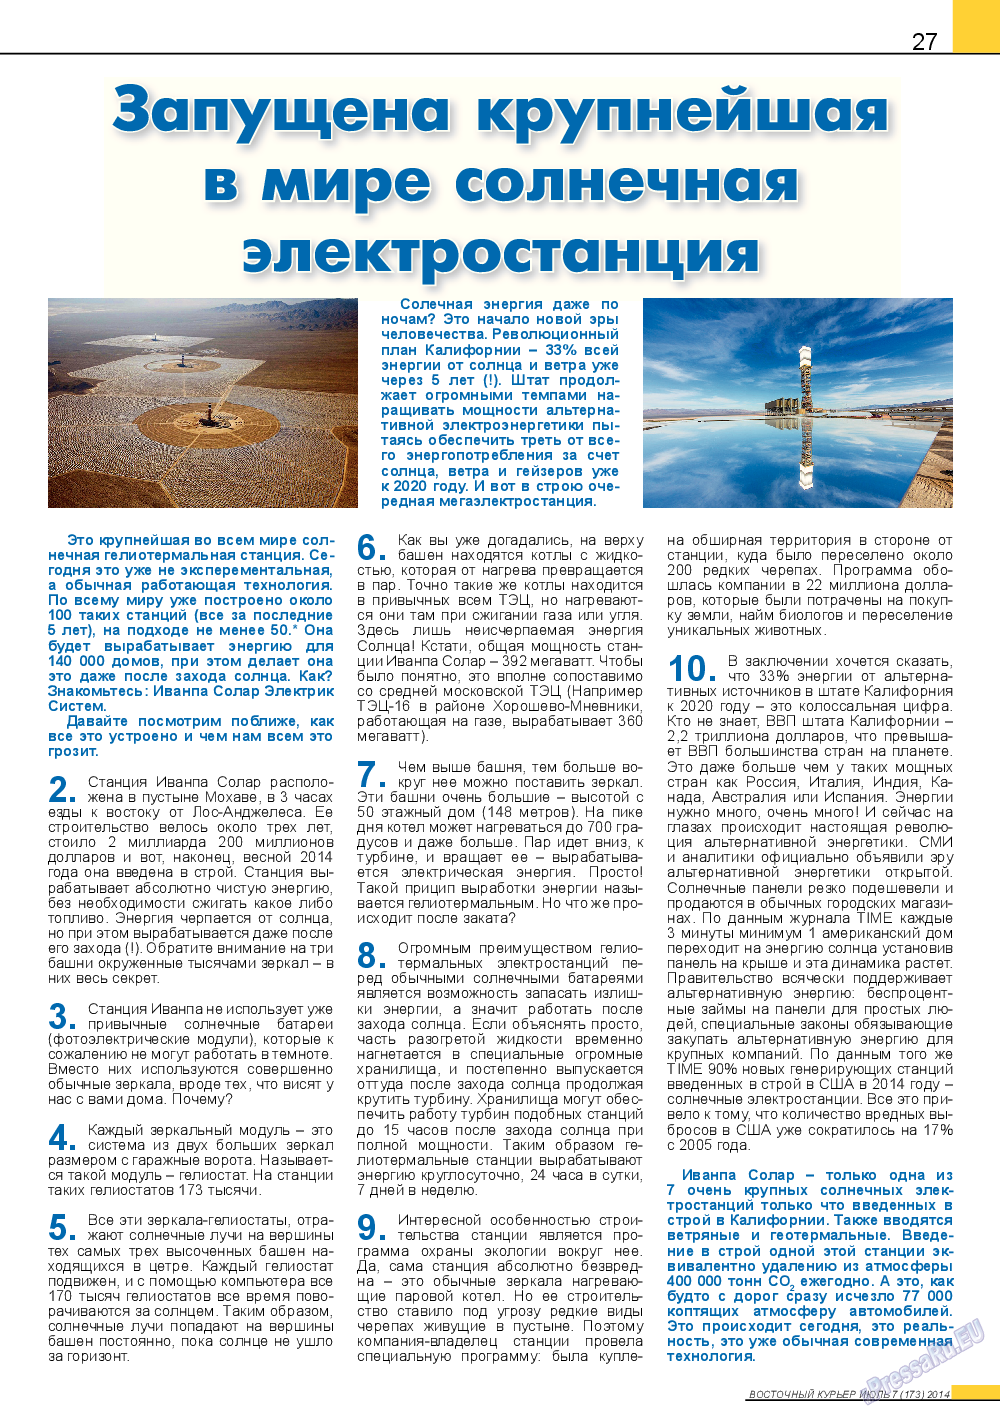 Восточный курьер, журнал. 2014 №7 стр.27